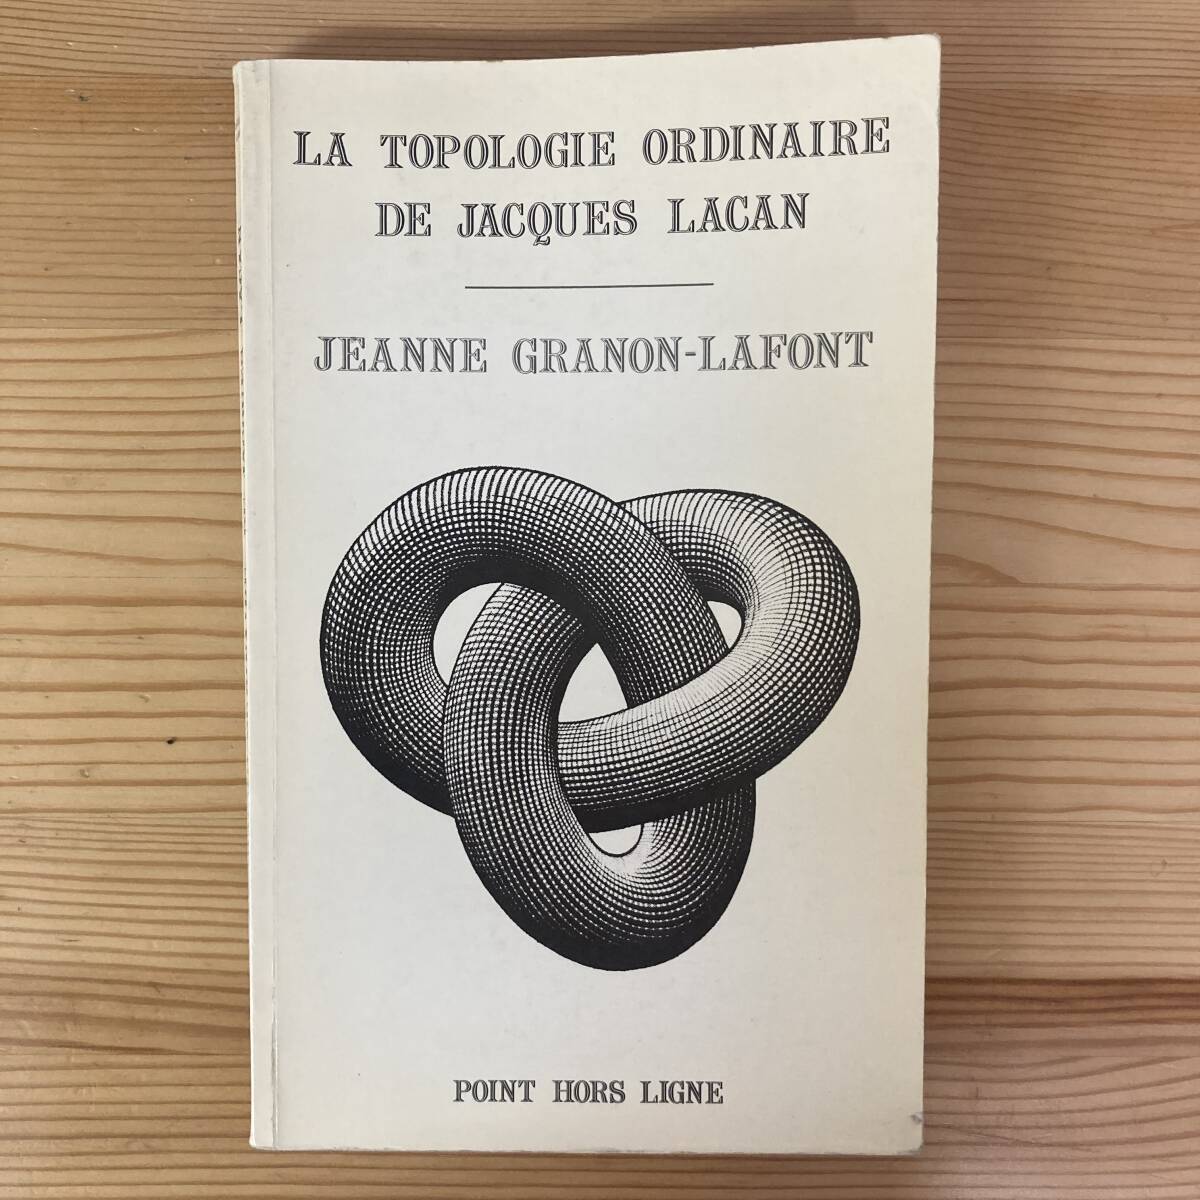 【仏語洋書】LA TOPOLOGIE ORDINAIRE DE JACQUES LACAN / Jeanne Granon-Lafont（著）【精神分析 ジャック・ラカン】_画像1